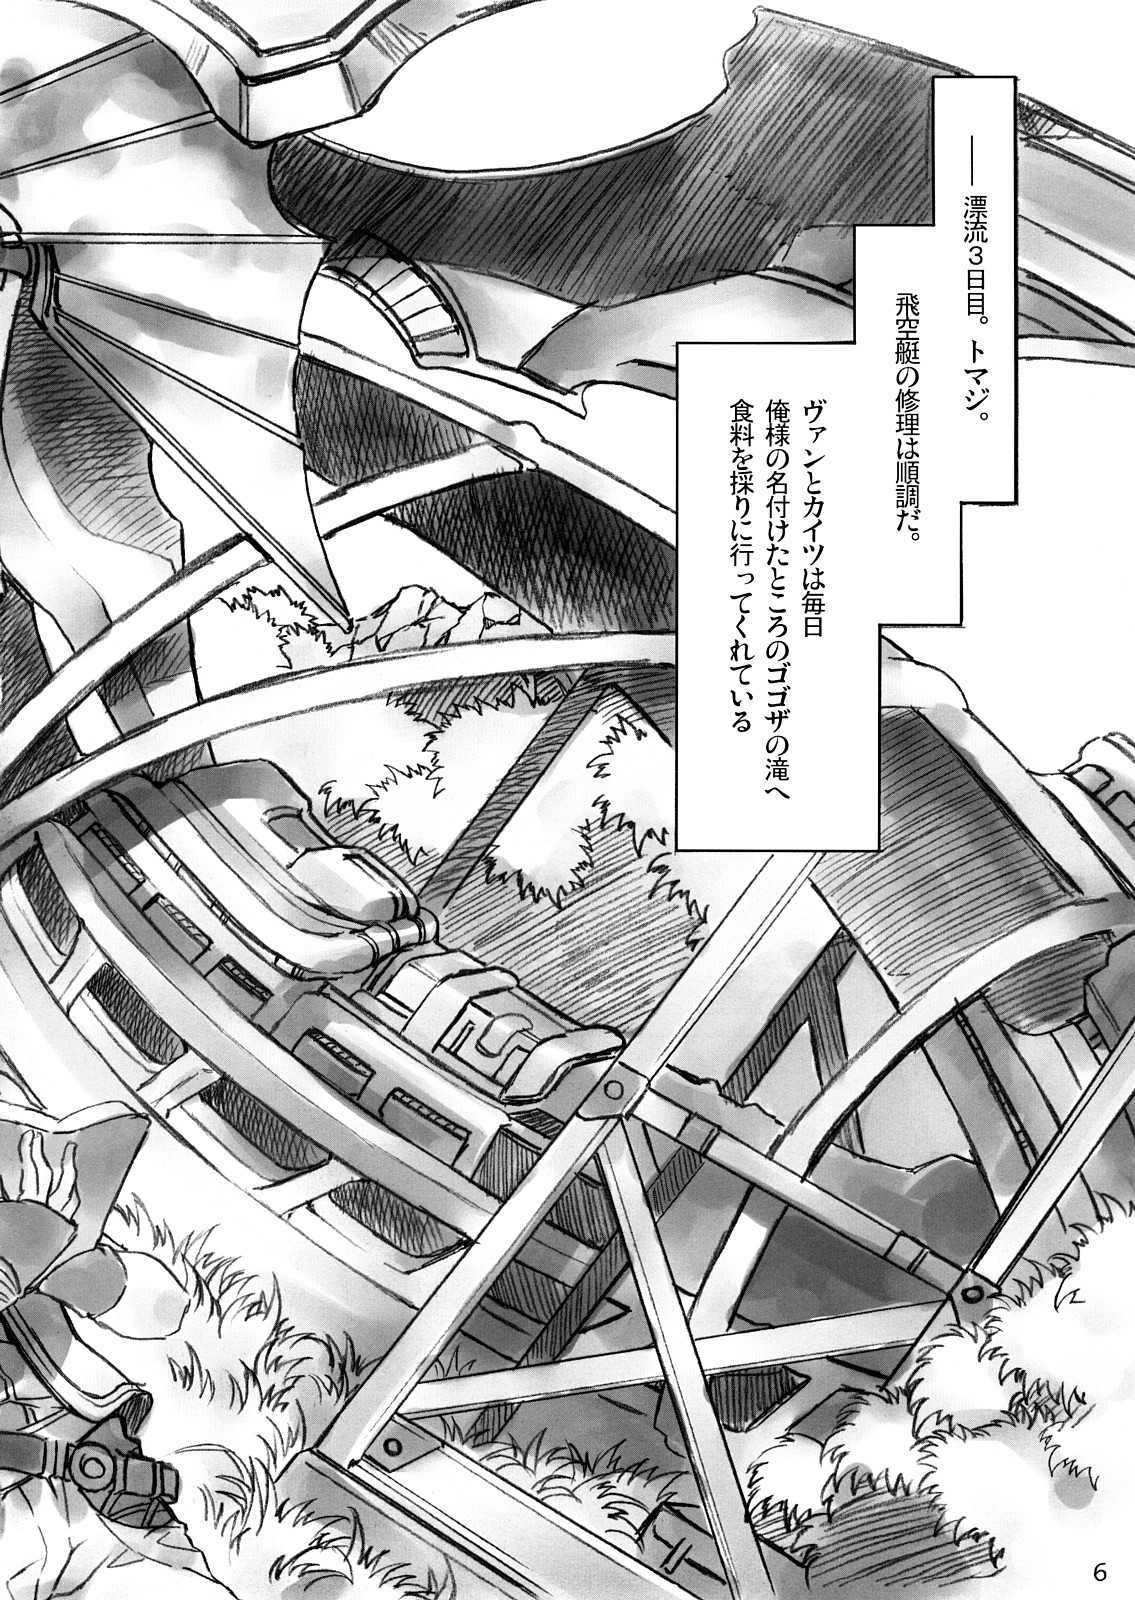 [Alice no Takarabako] Korokara Fuzoku Date (Final Fantasy XII) 